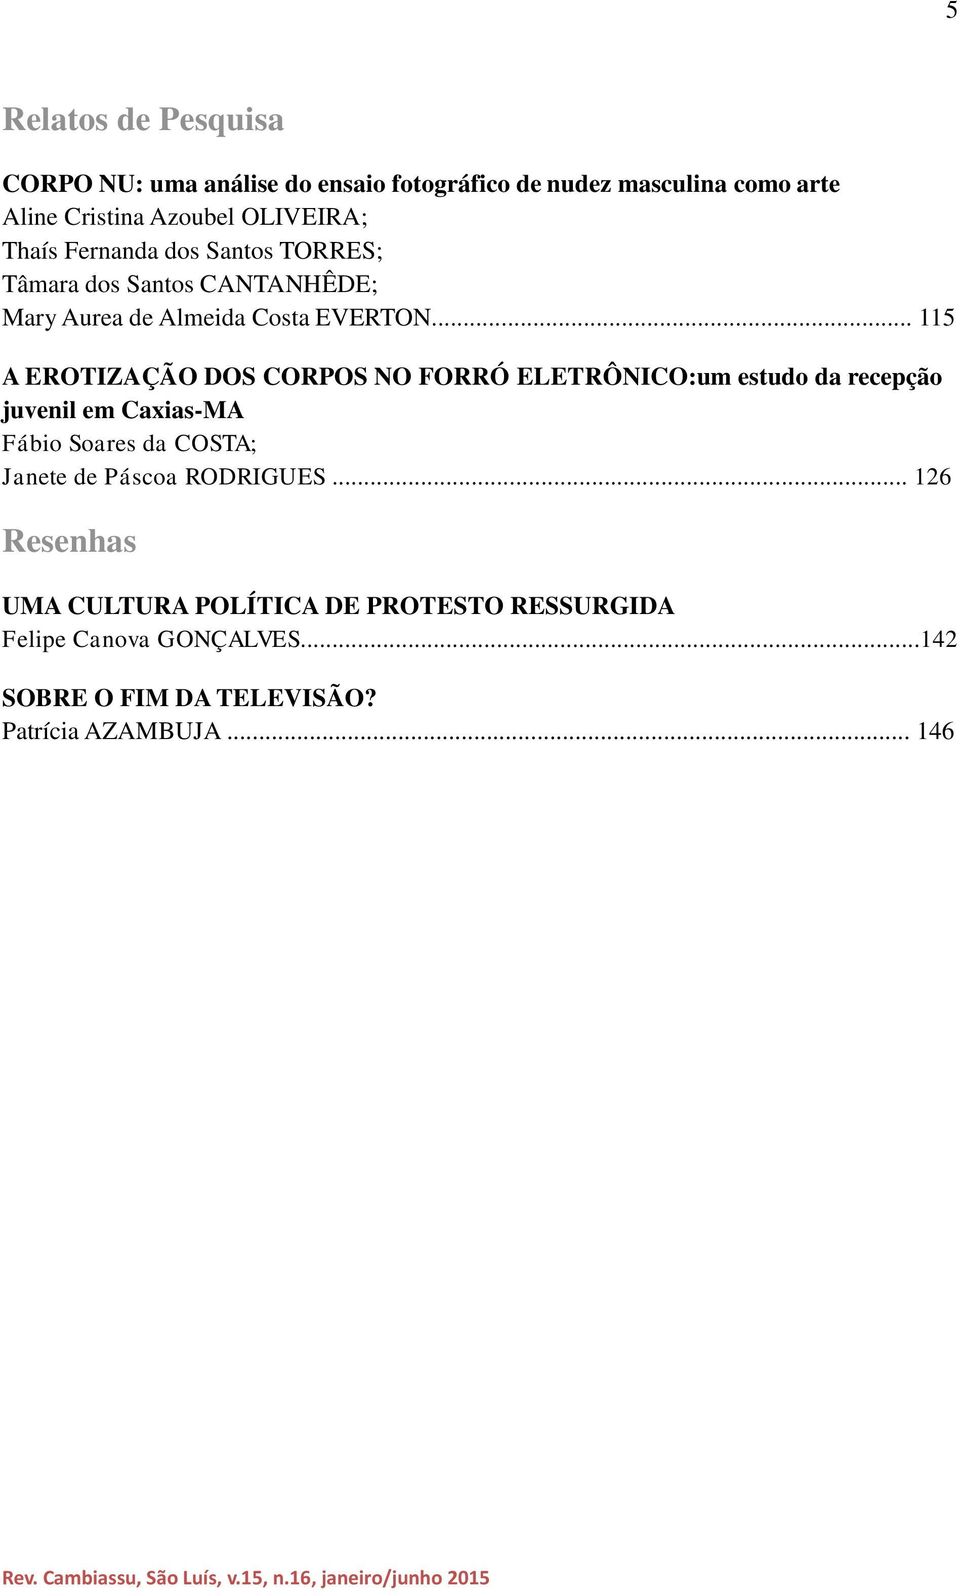 .. 115 A EROTIZAÇÃO DOS CORPOS NO FORRÓ ELETRÔNICO:um estudo da recepção juvenil em Caxias-MA Fábio Soares da COSTA; Janete de